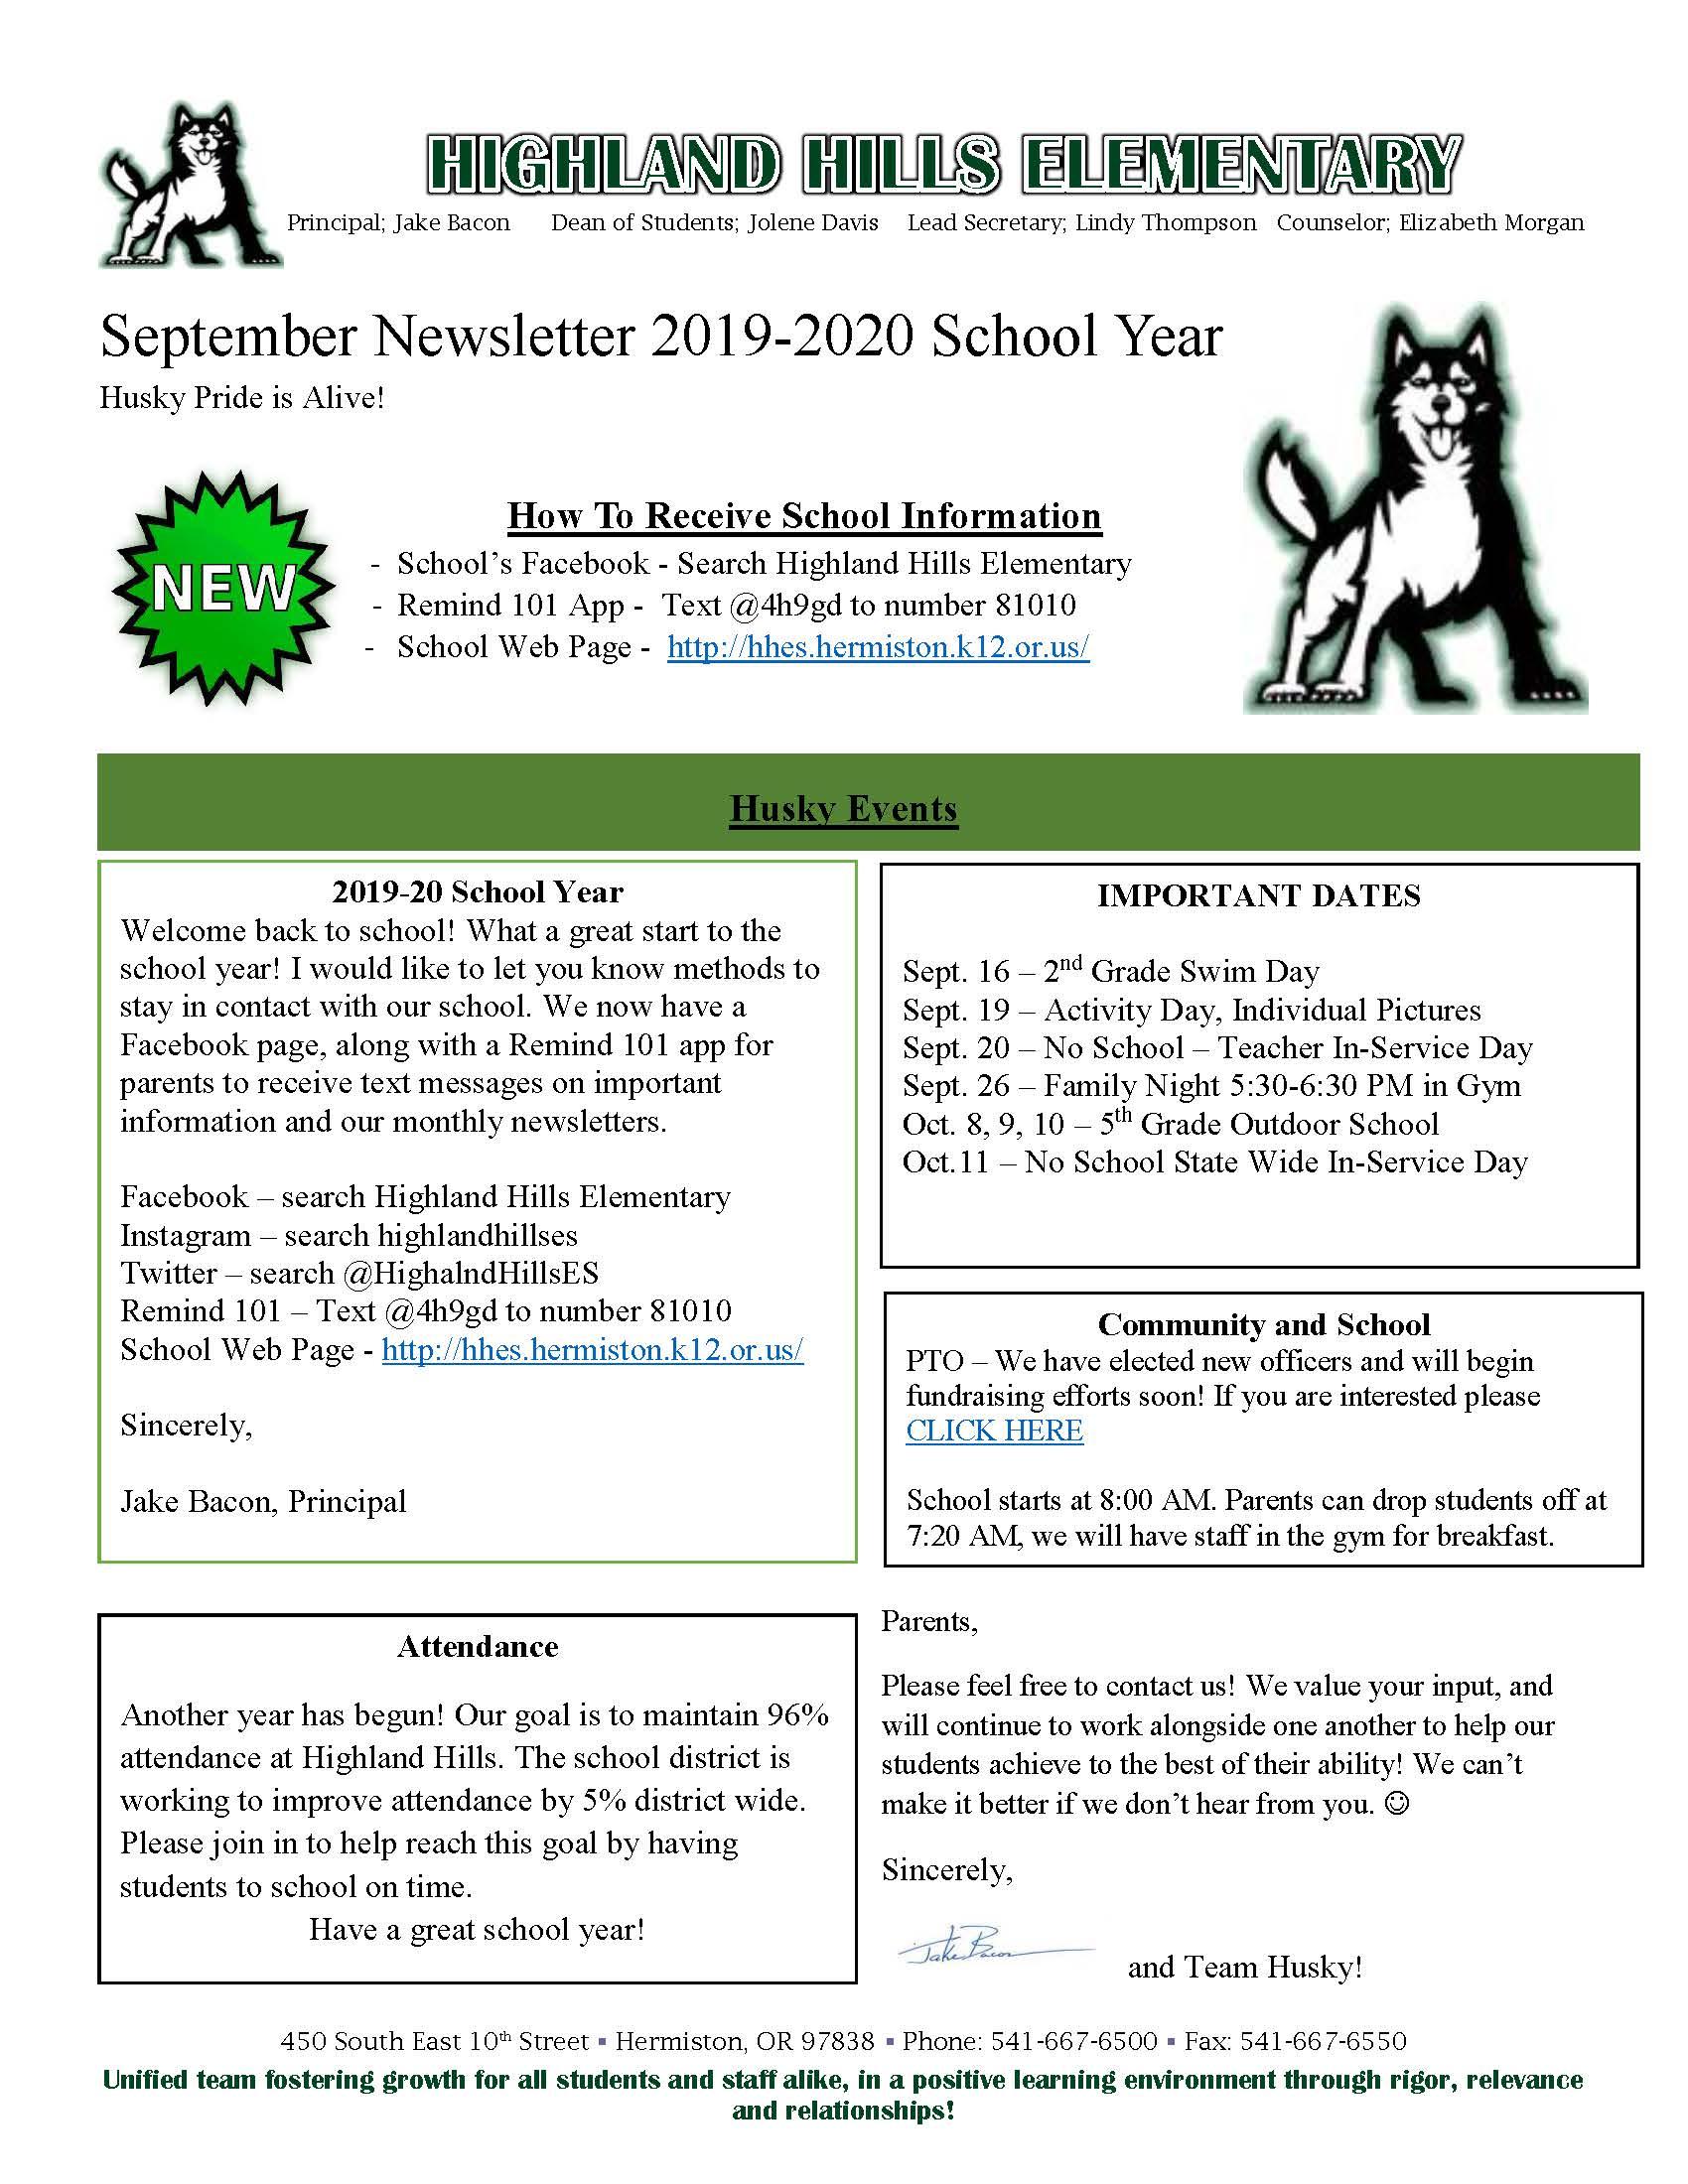 September's newsletter